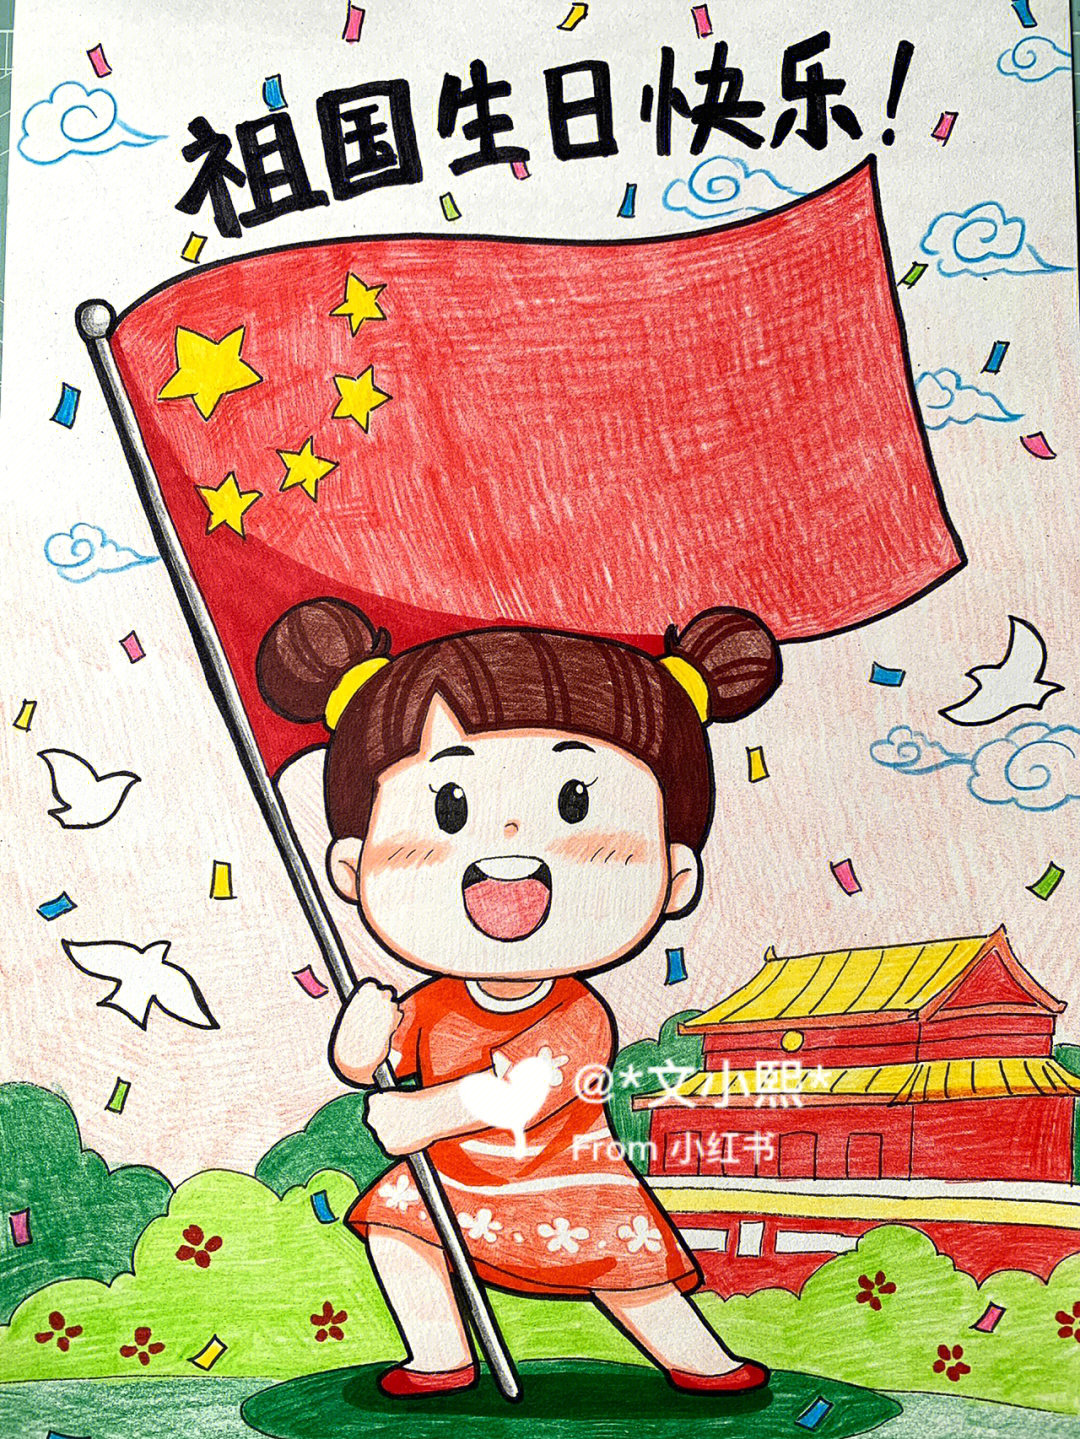 国庆节漫画手绘图大全图片